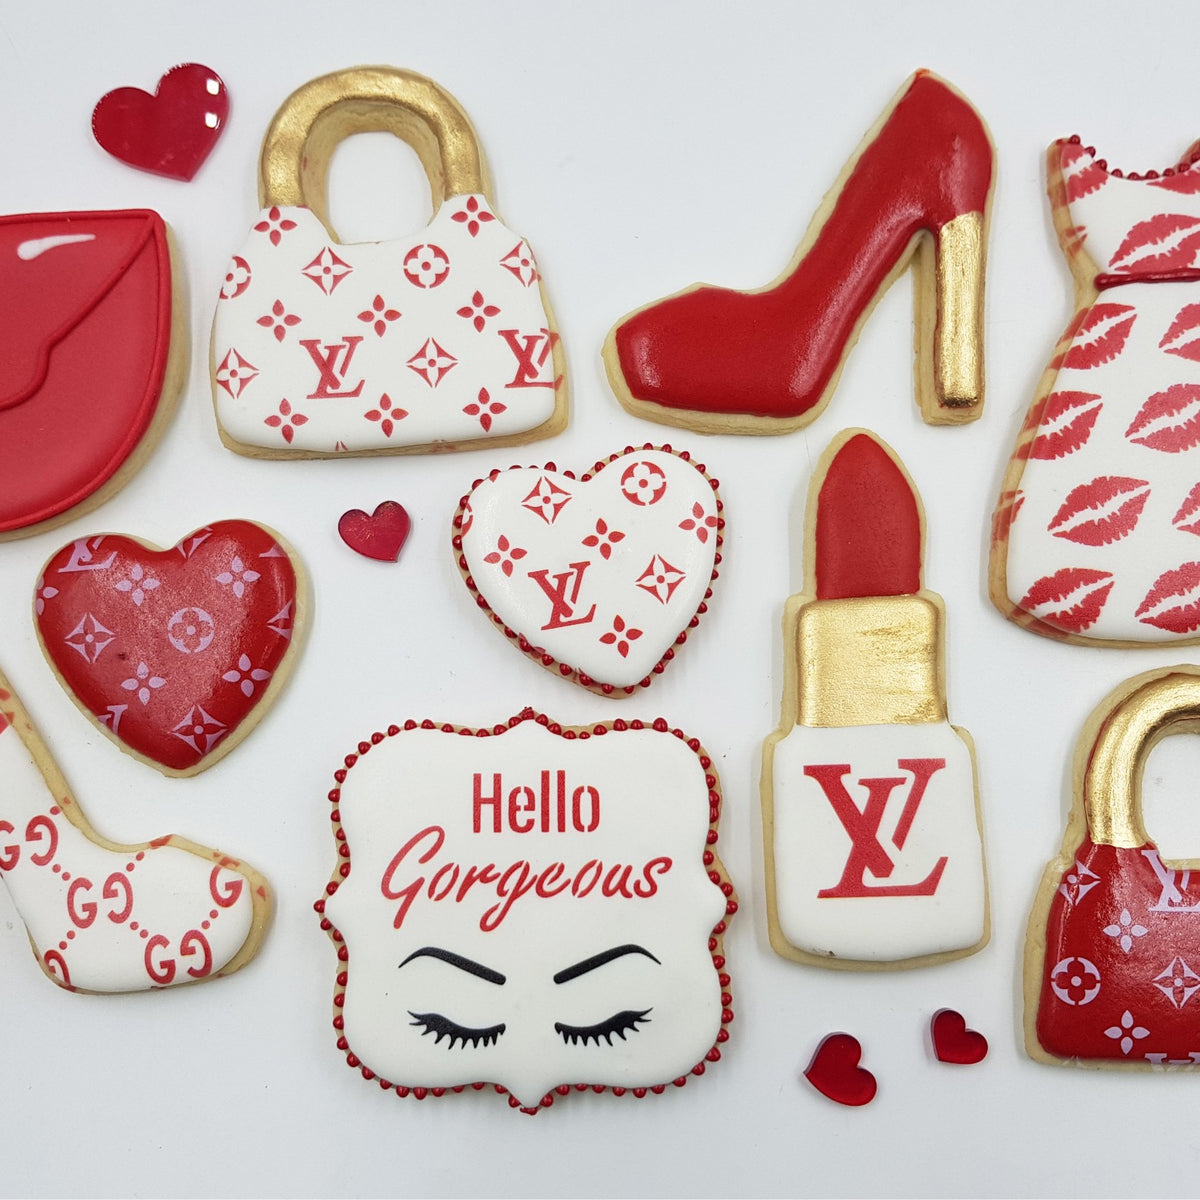 Louis Vuitton Designer Handbag Cookies - Bakers and Artists